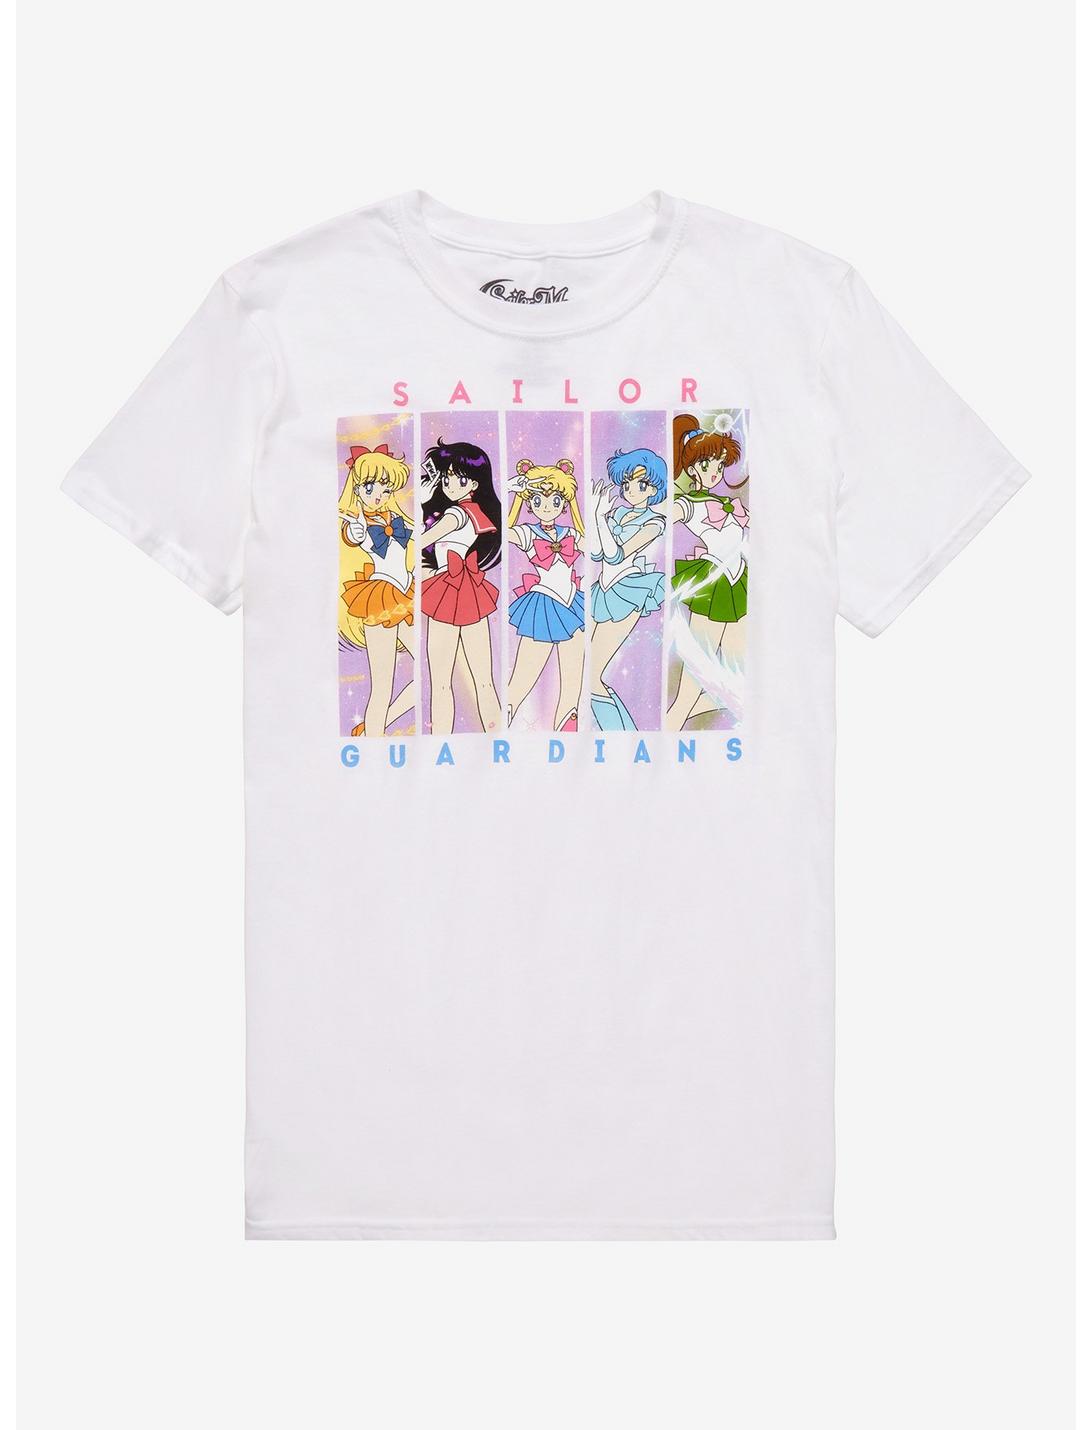 Sailor Moon Group Pastel Panel Boyfriend Fit Girls T-Shirt, MULTI, hi-res